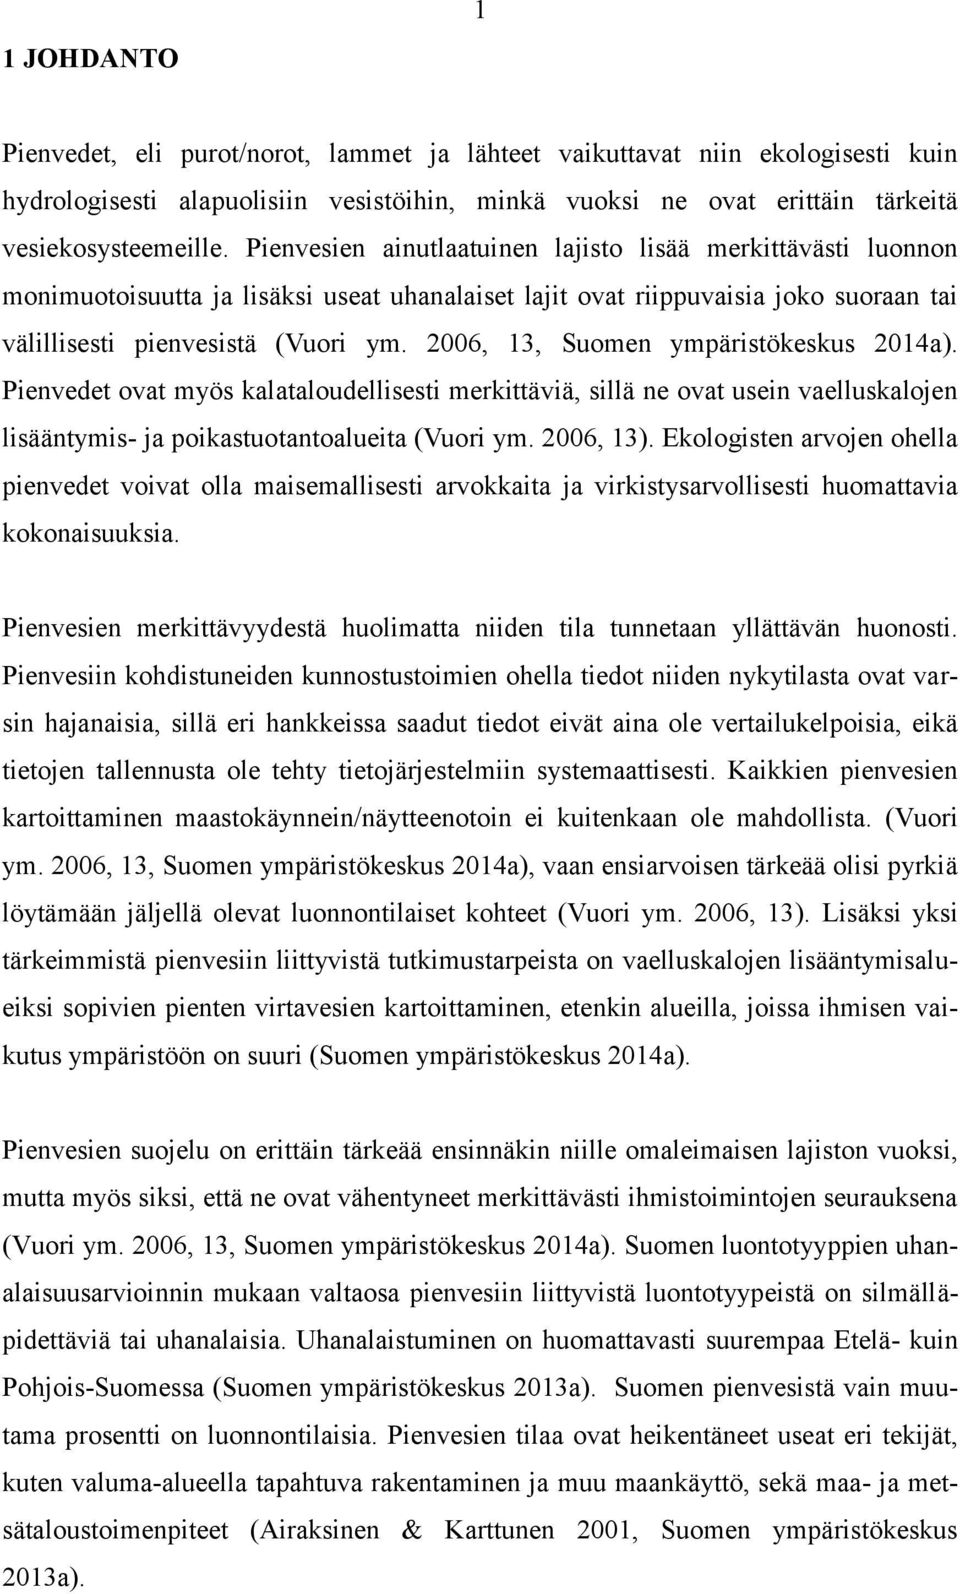 2006, 13, Suomen ympäristökeskus 2014a). Pienvedet ovat myös kalataloudellisesti merkittäviä, sillä ne ovat usein vaelluskalojen lisääntymis- ja poikastuotantoalueita (Vuori ym. 2006, 13).